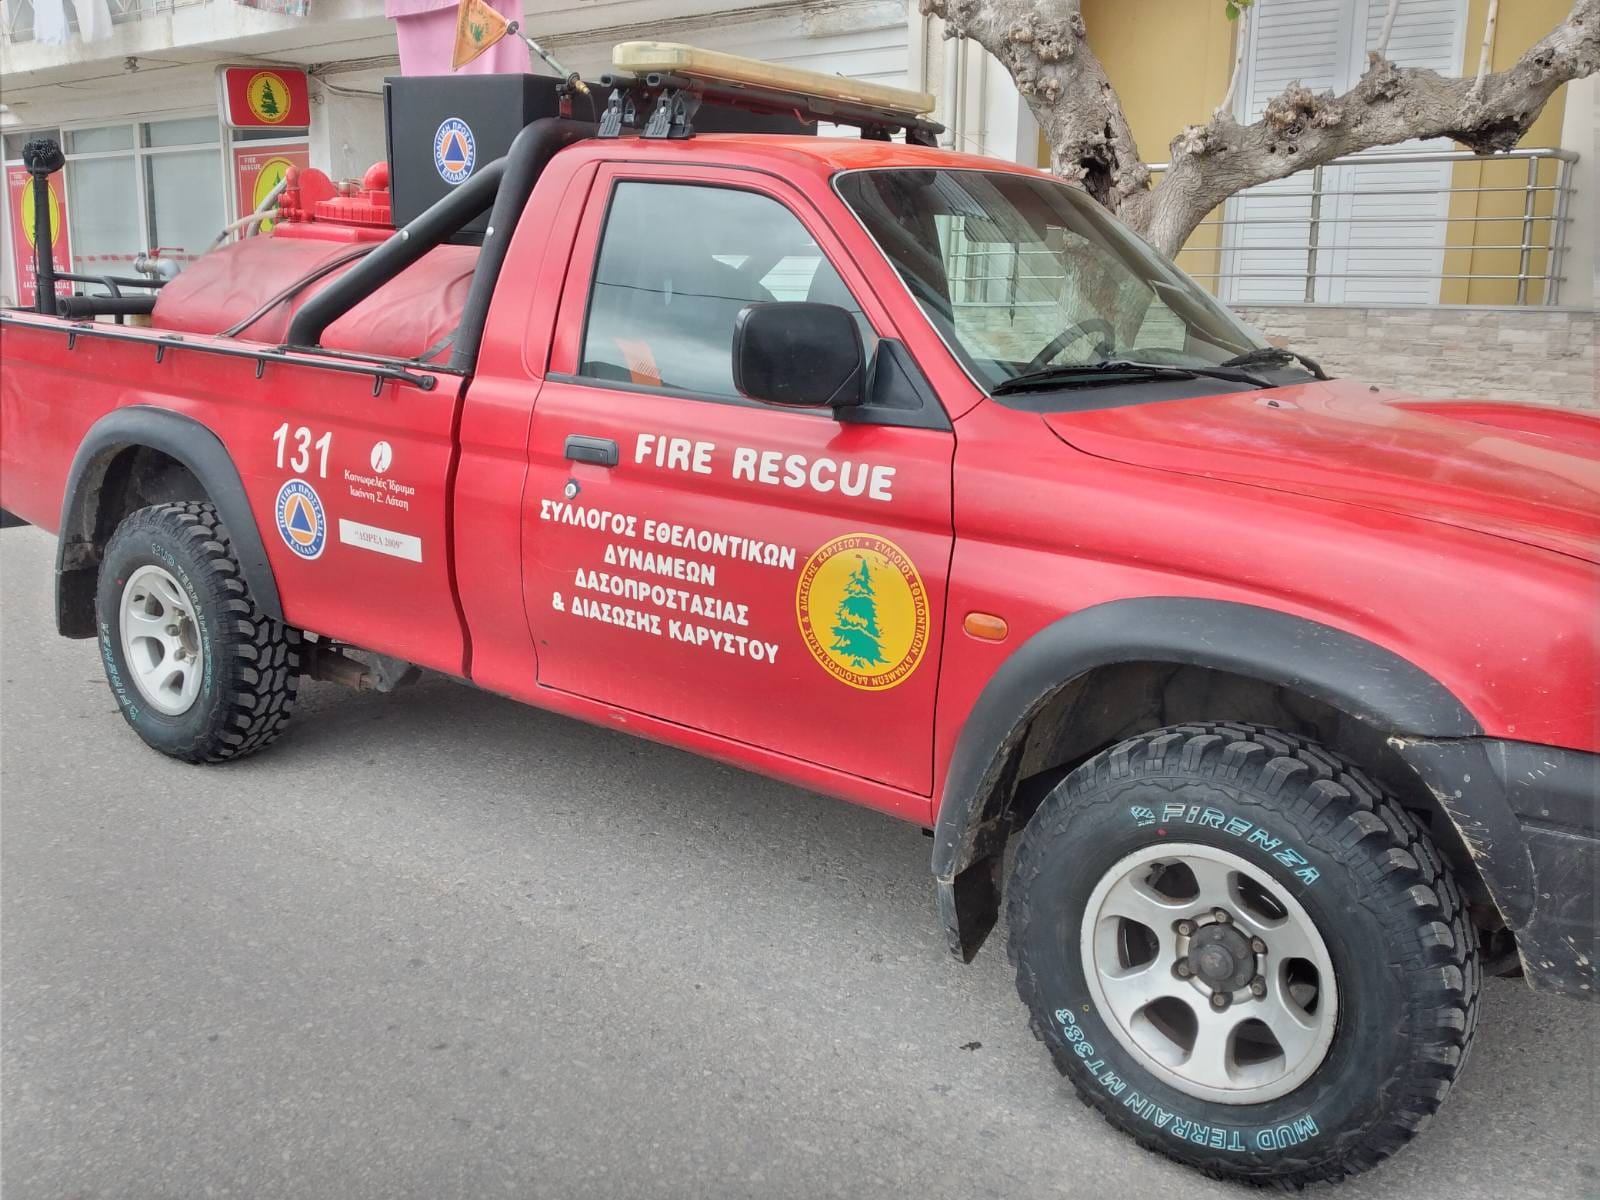 Νέα ελαστικά στο πυροσβεστικό όχημα του συλλόγου Εθελοντών Δασοπροστασίας Καρύστου από φίλο του Συλλόγου